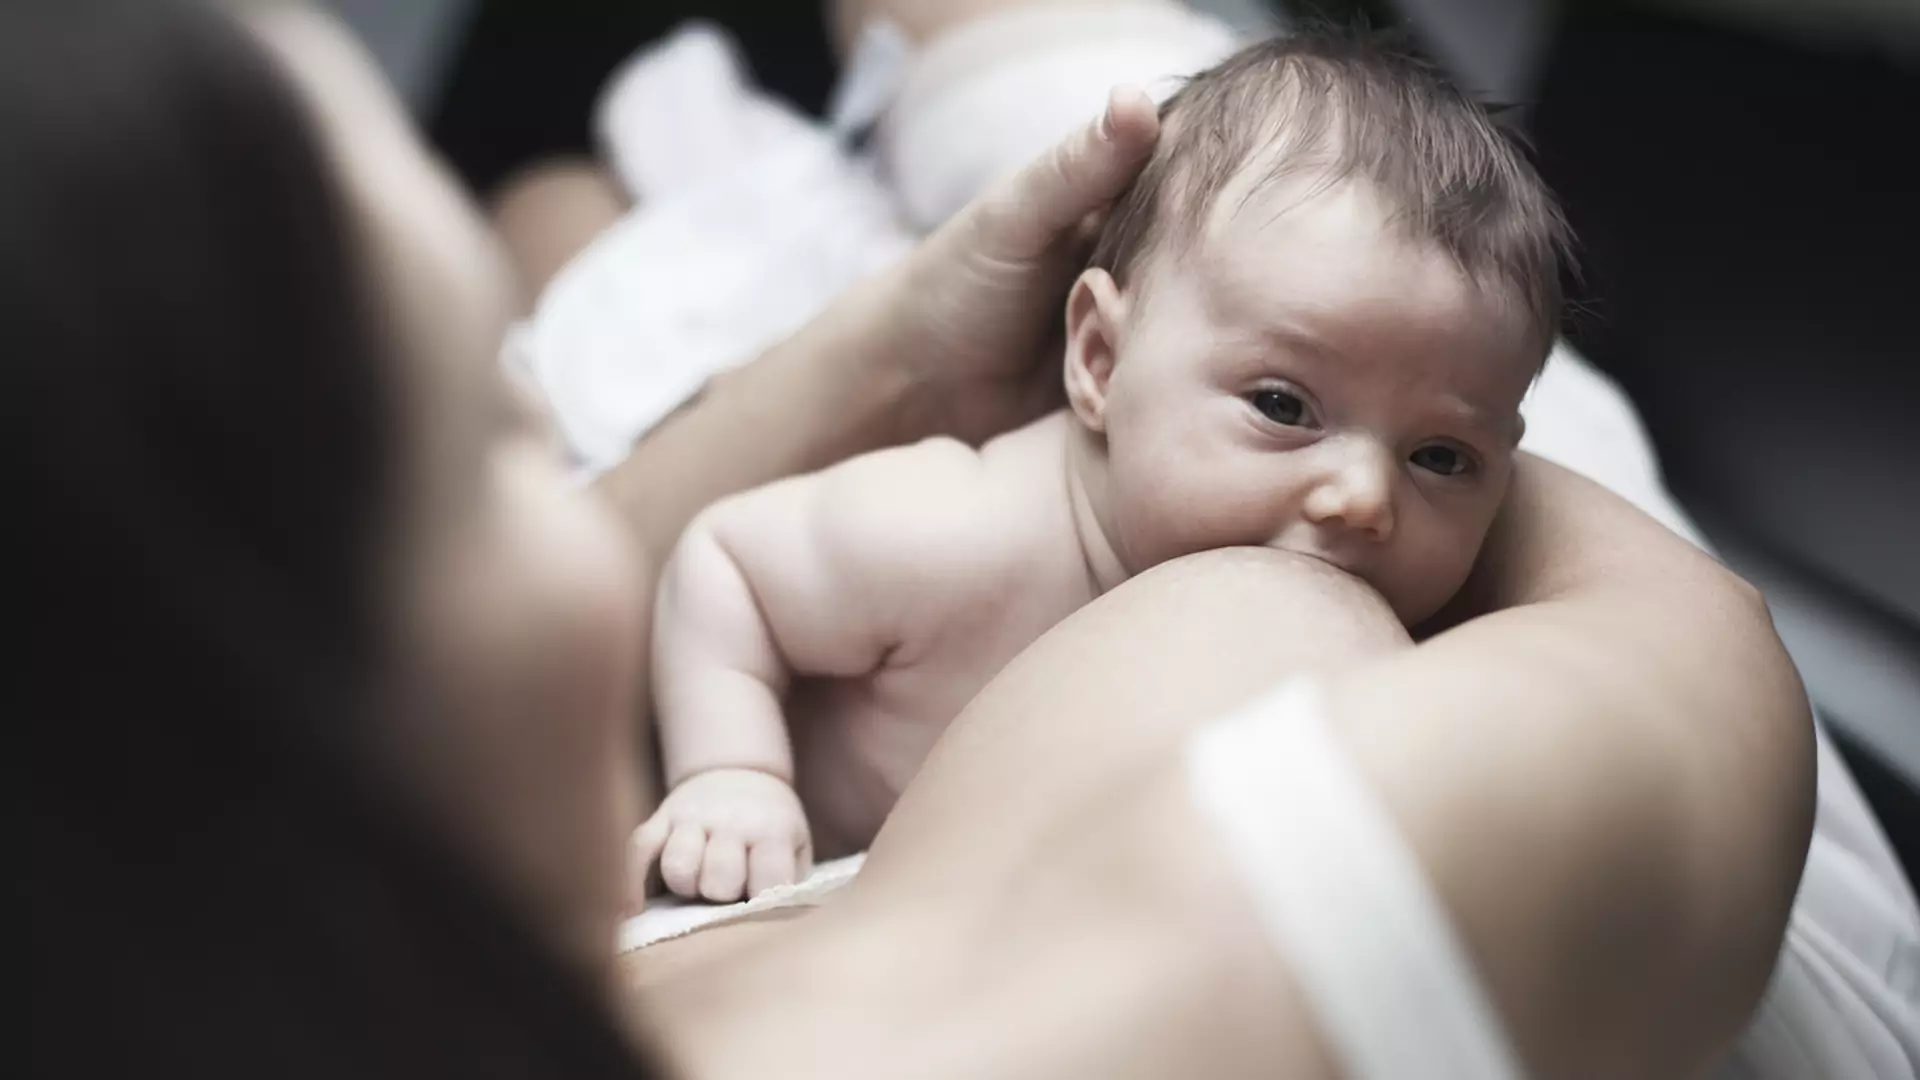 Mleko matki może zwalczyć groźne bakterie u malucha - zapobiega np. sepsie